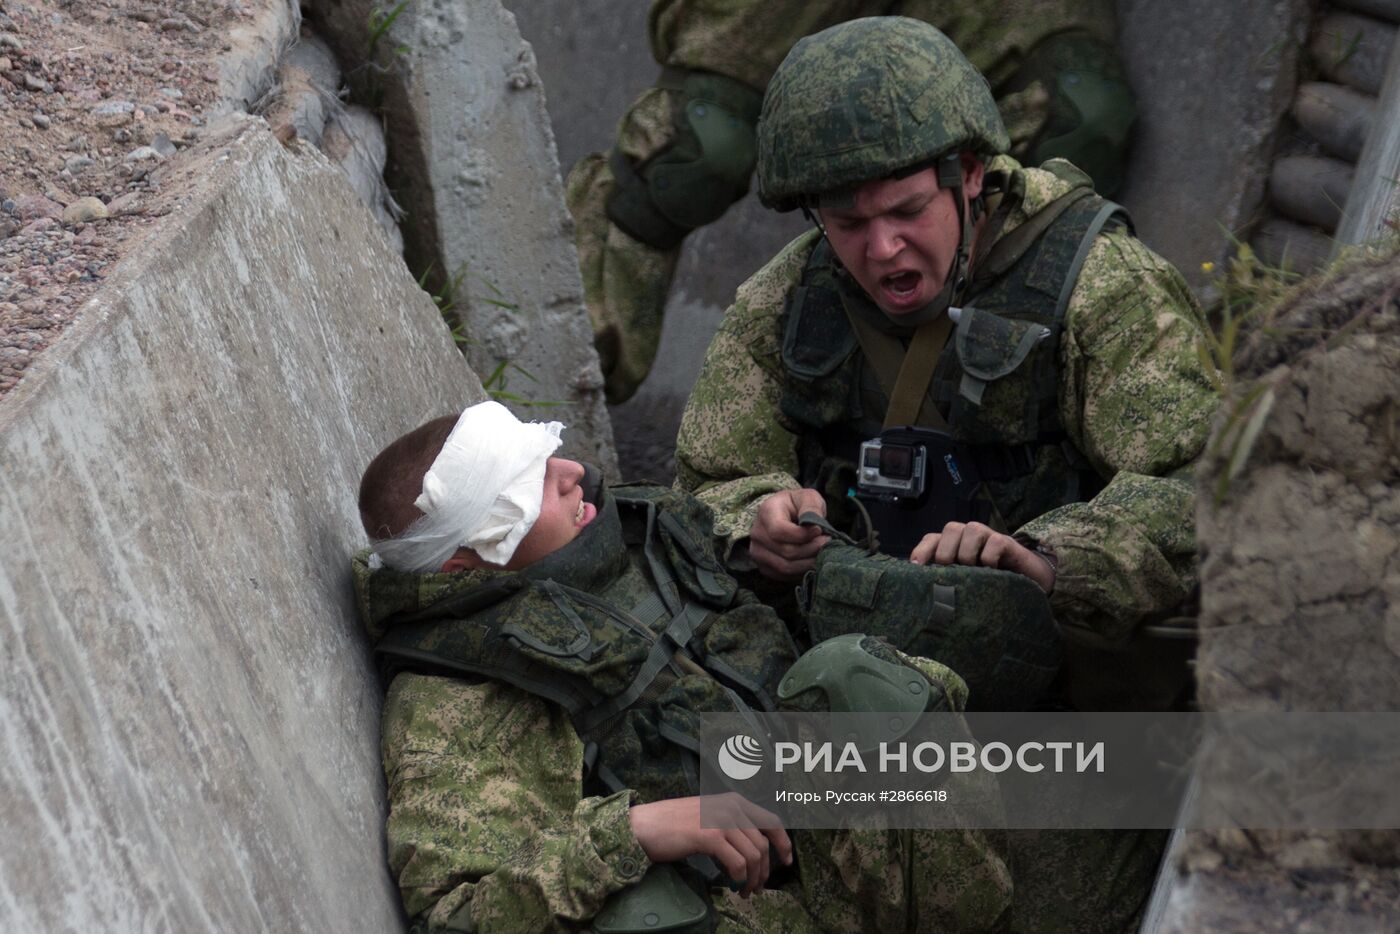 Военно-медицинские учения "Очаг-2016" в Санкт-Петербурге